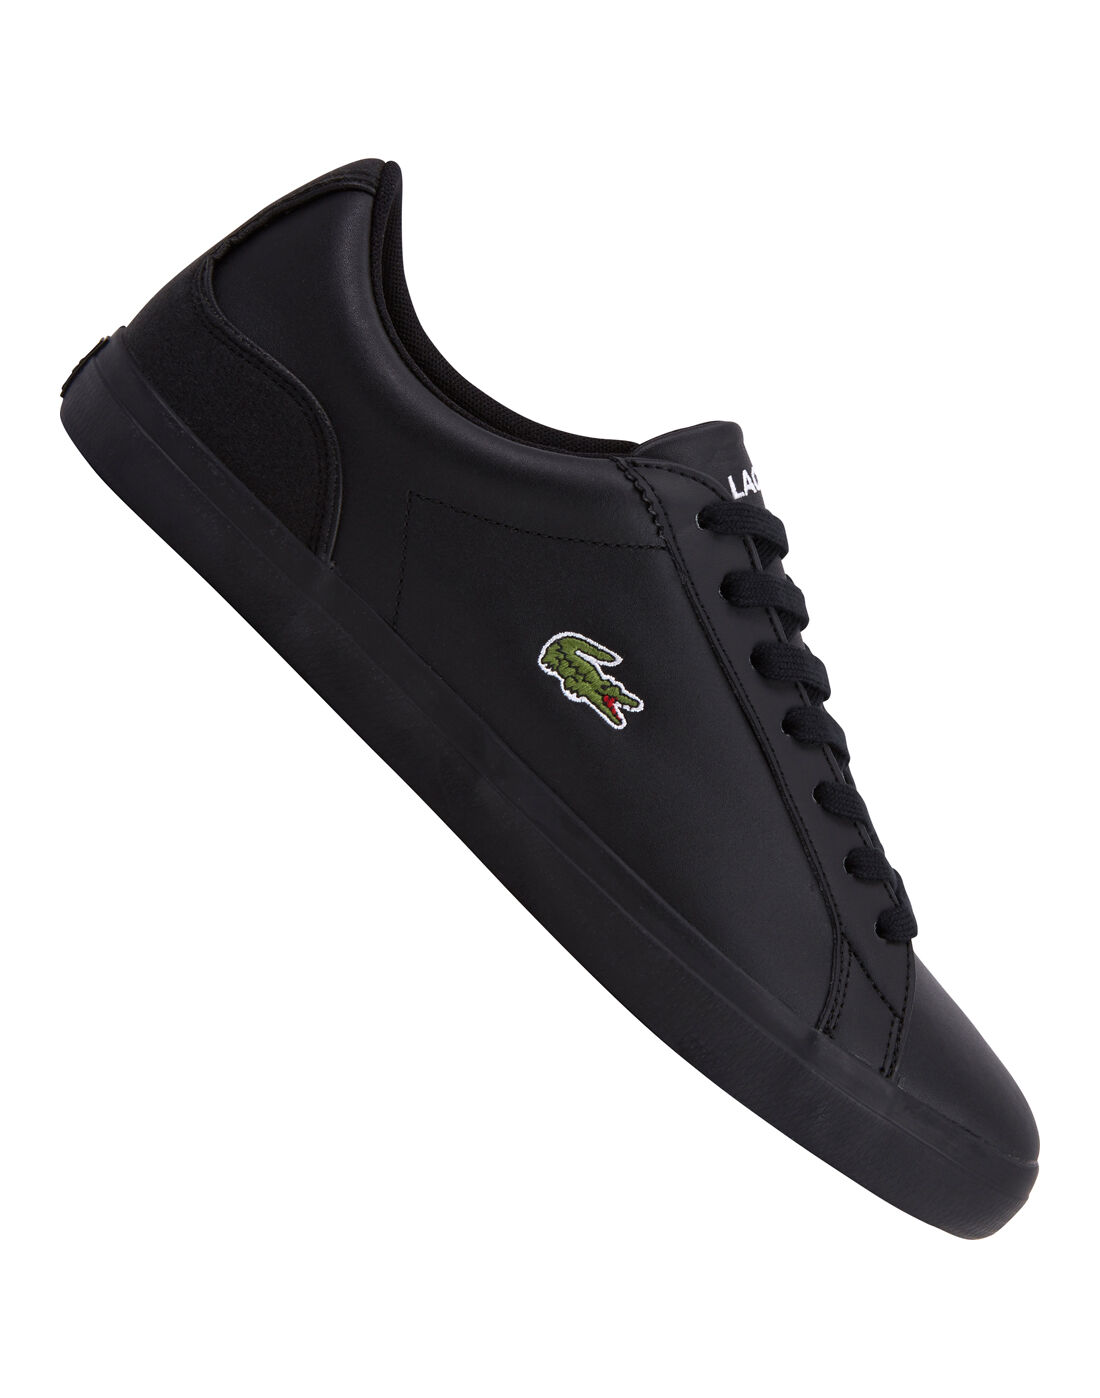 lacoste black tennis shoes